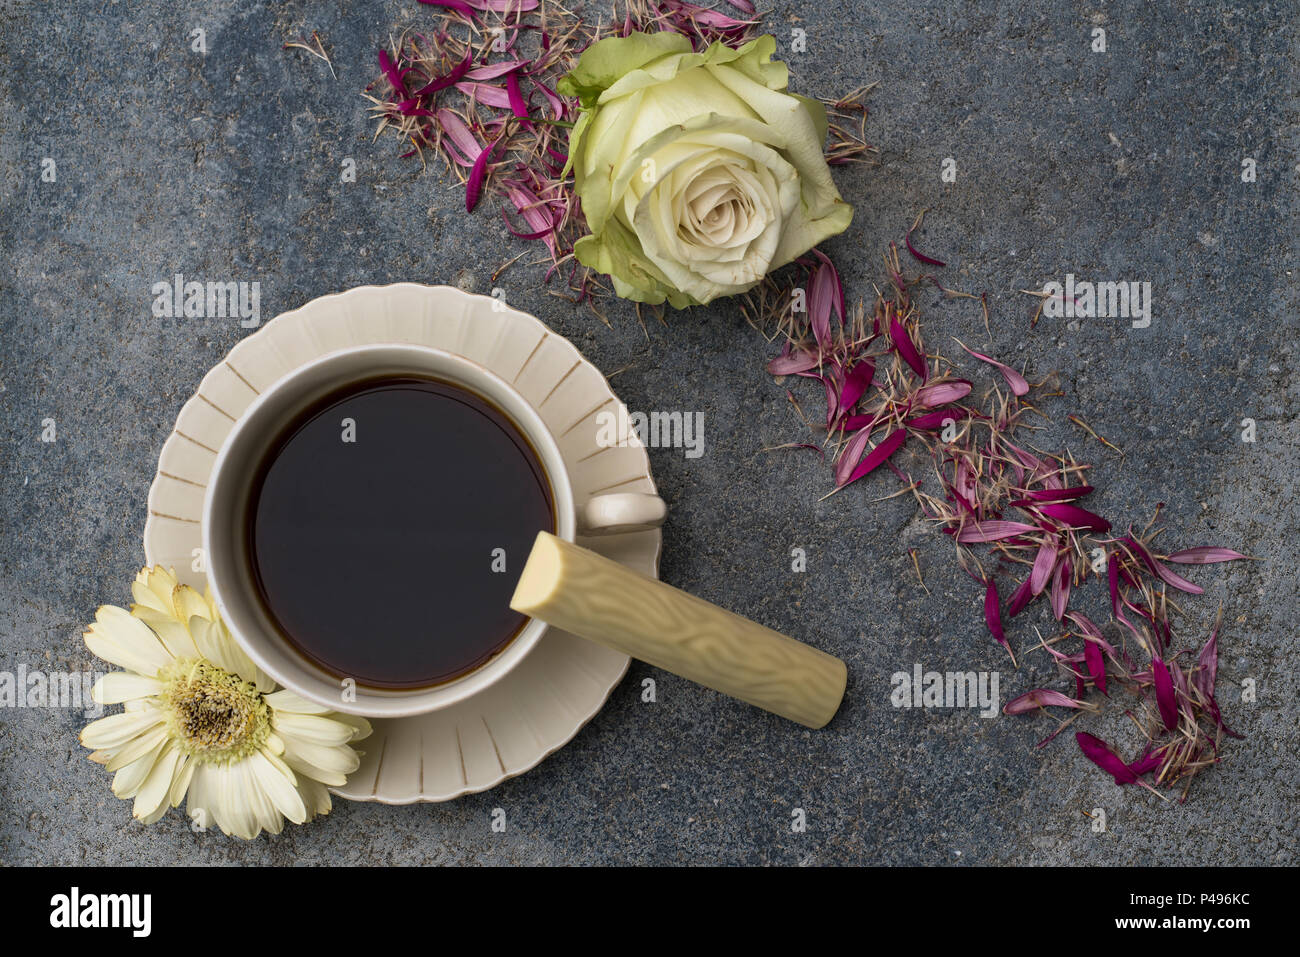 Une tasse de café se trouve en face de l'arrière-plan en béton. Fleurs de couleur Champagne et pétales de fleurs décorent la photo. Une sucrerie faite de blanc Banque D'Images